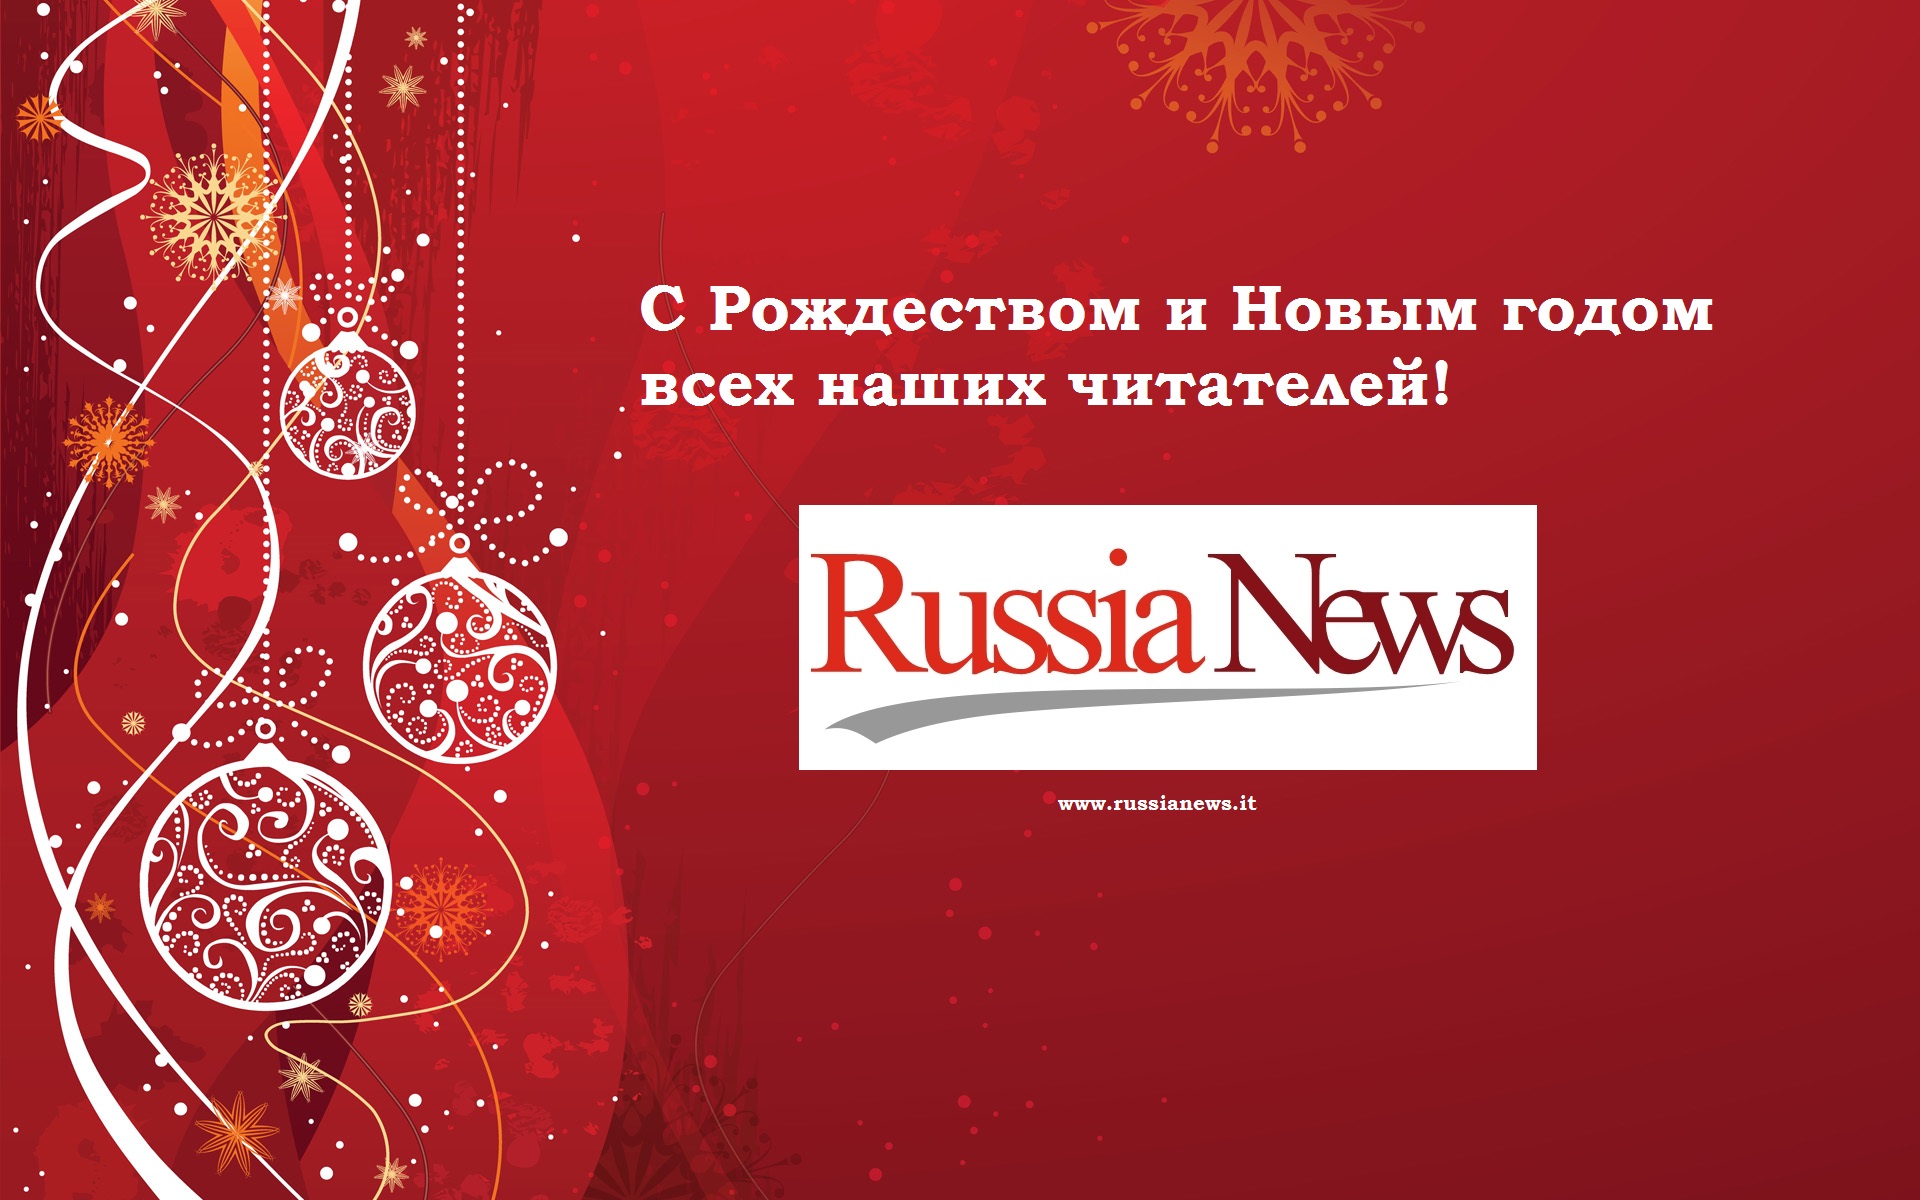 Buon Natale In Russo.Buon Natale E Felice Anno Nuovo A Tutti I Lettori Di Russia News Russia News Novosti Rossii